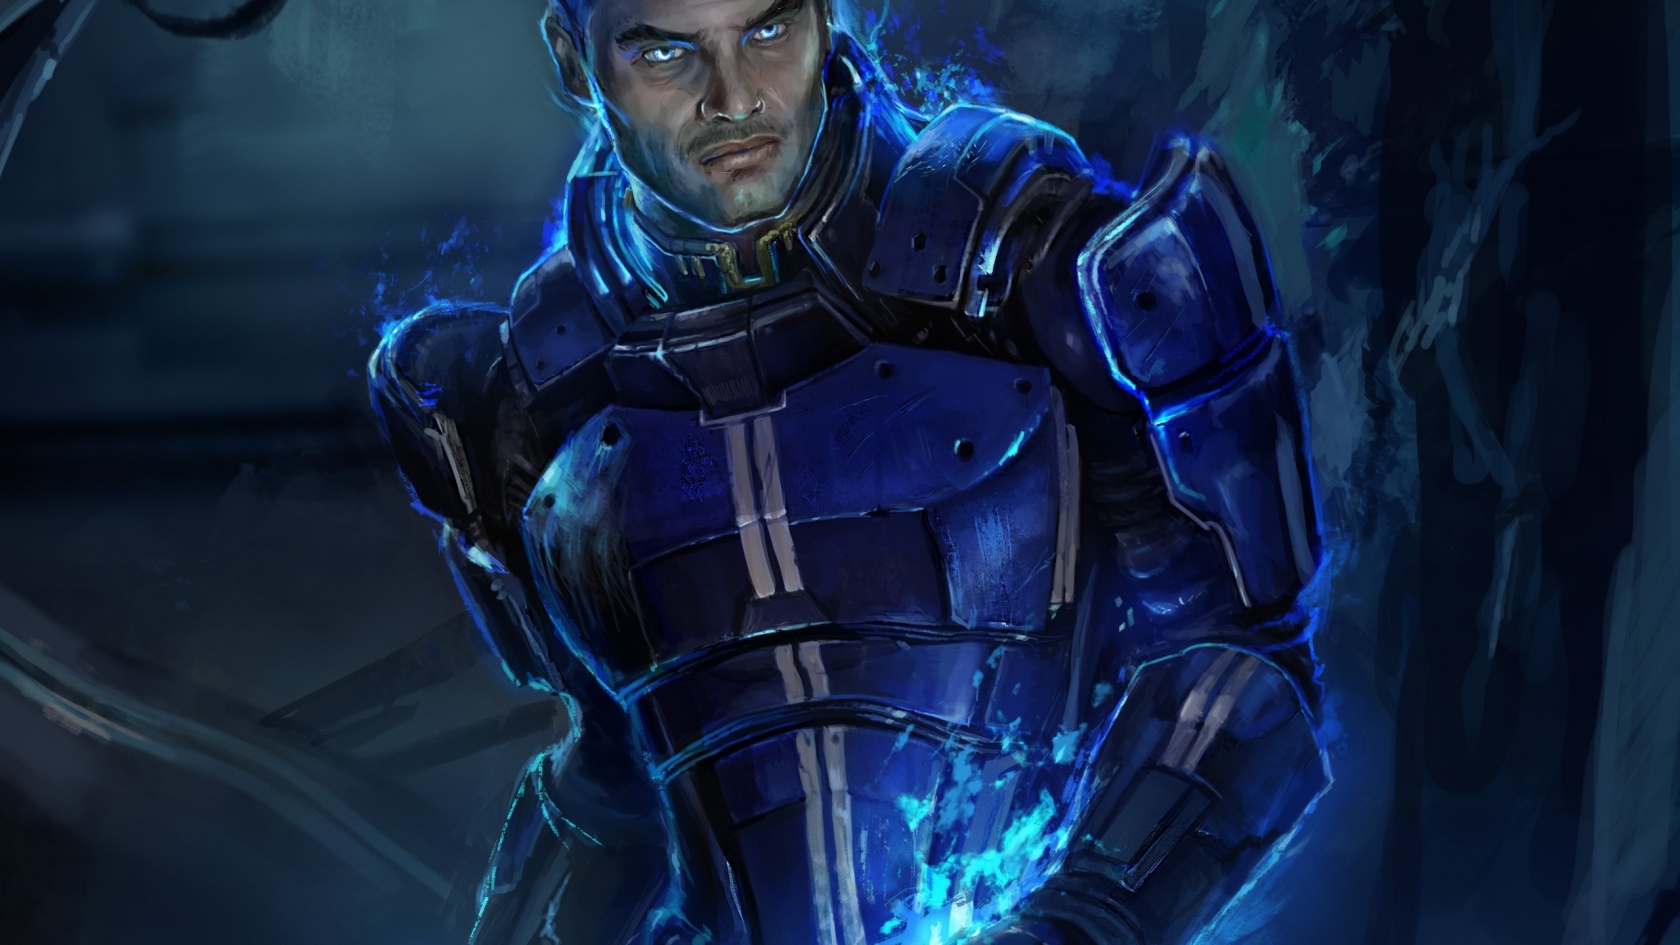 Kaidan Alenko Mass Effect 3 for 1680 x 945 HDTV resolution